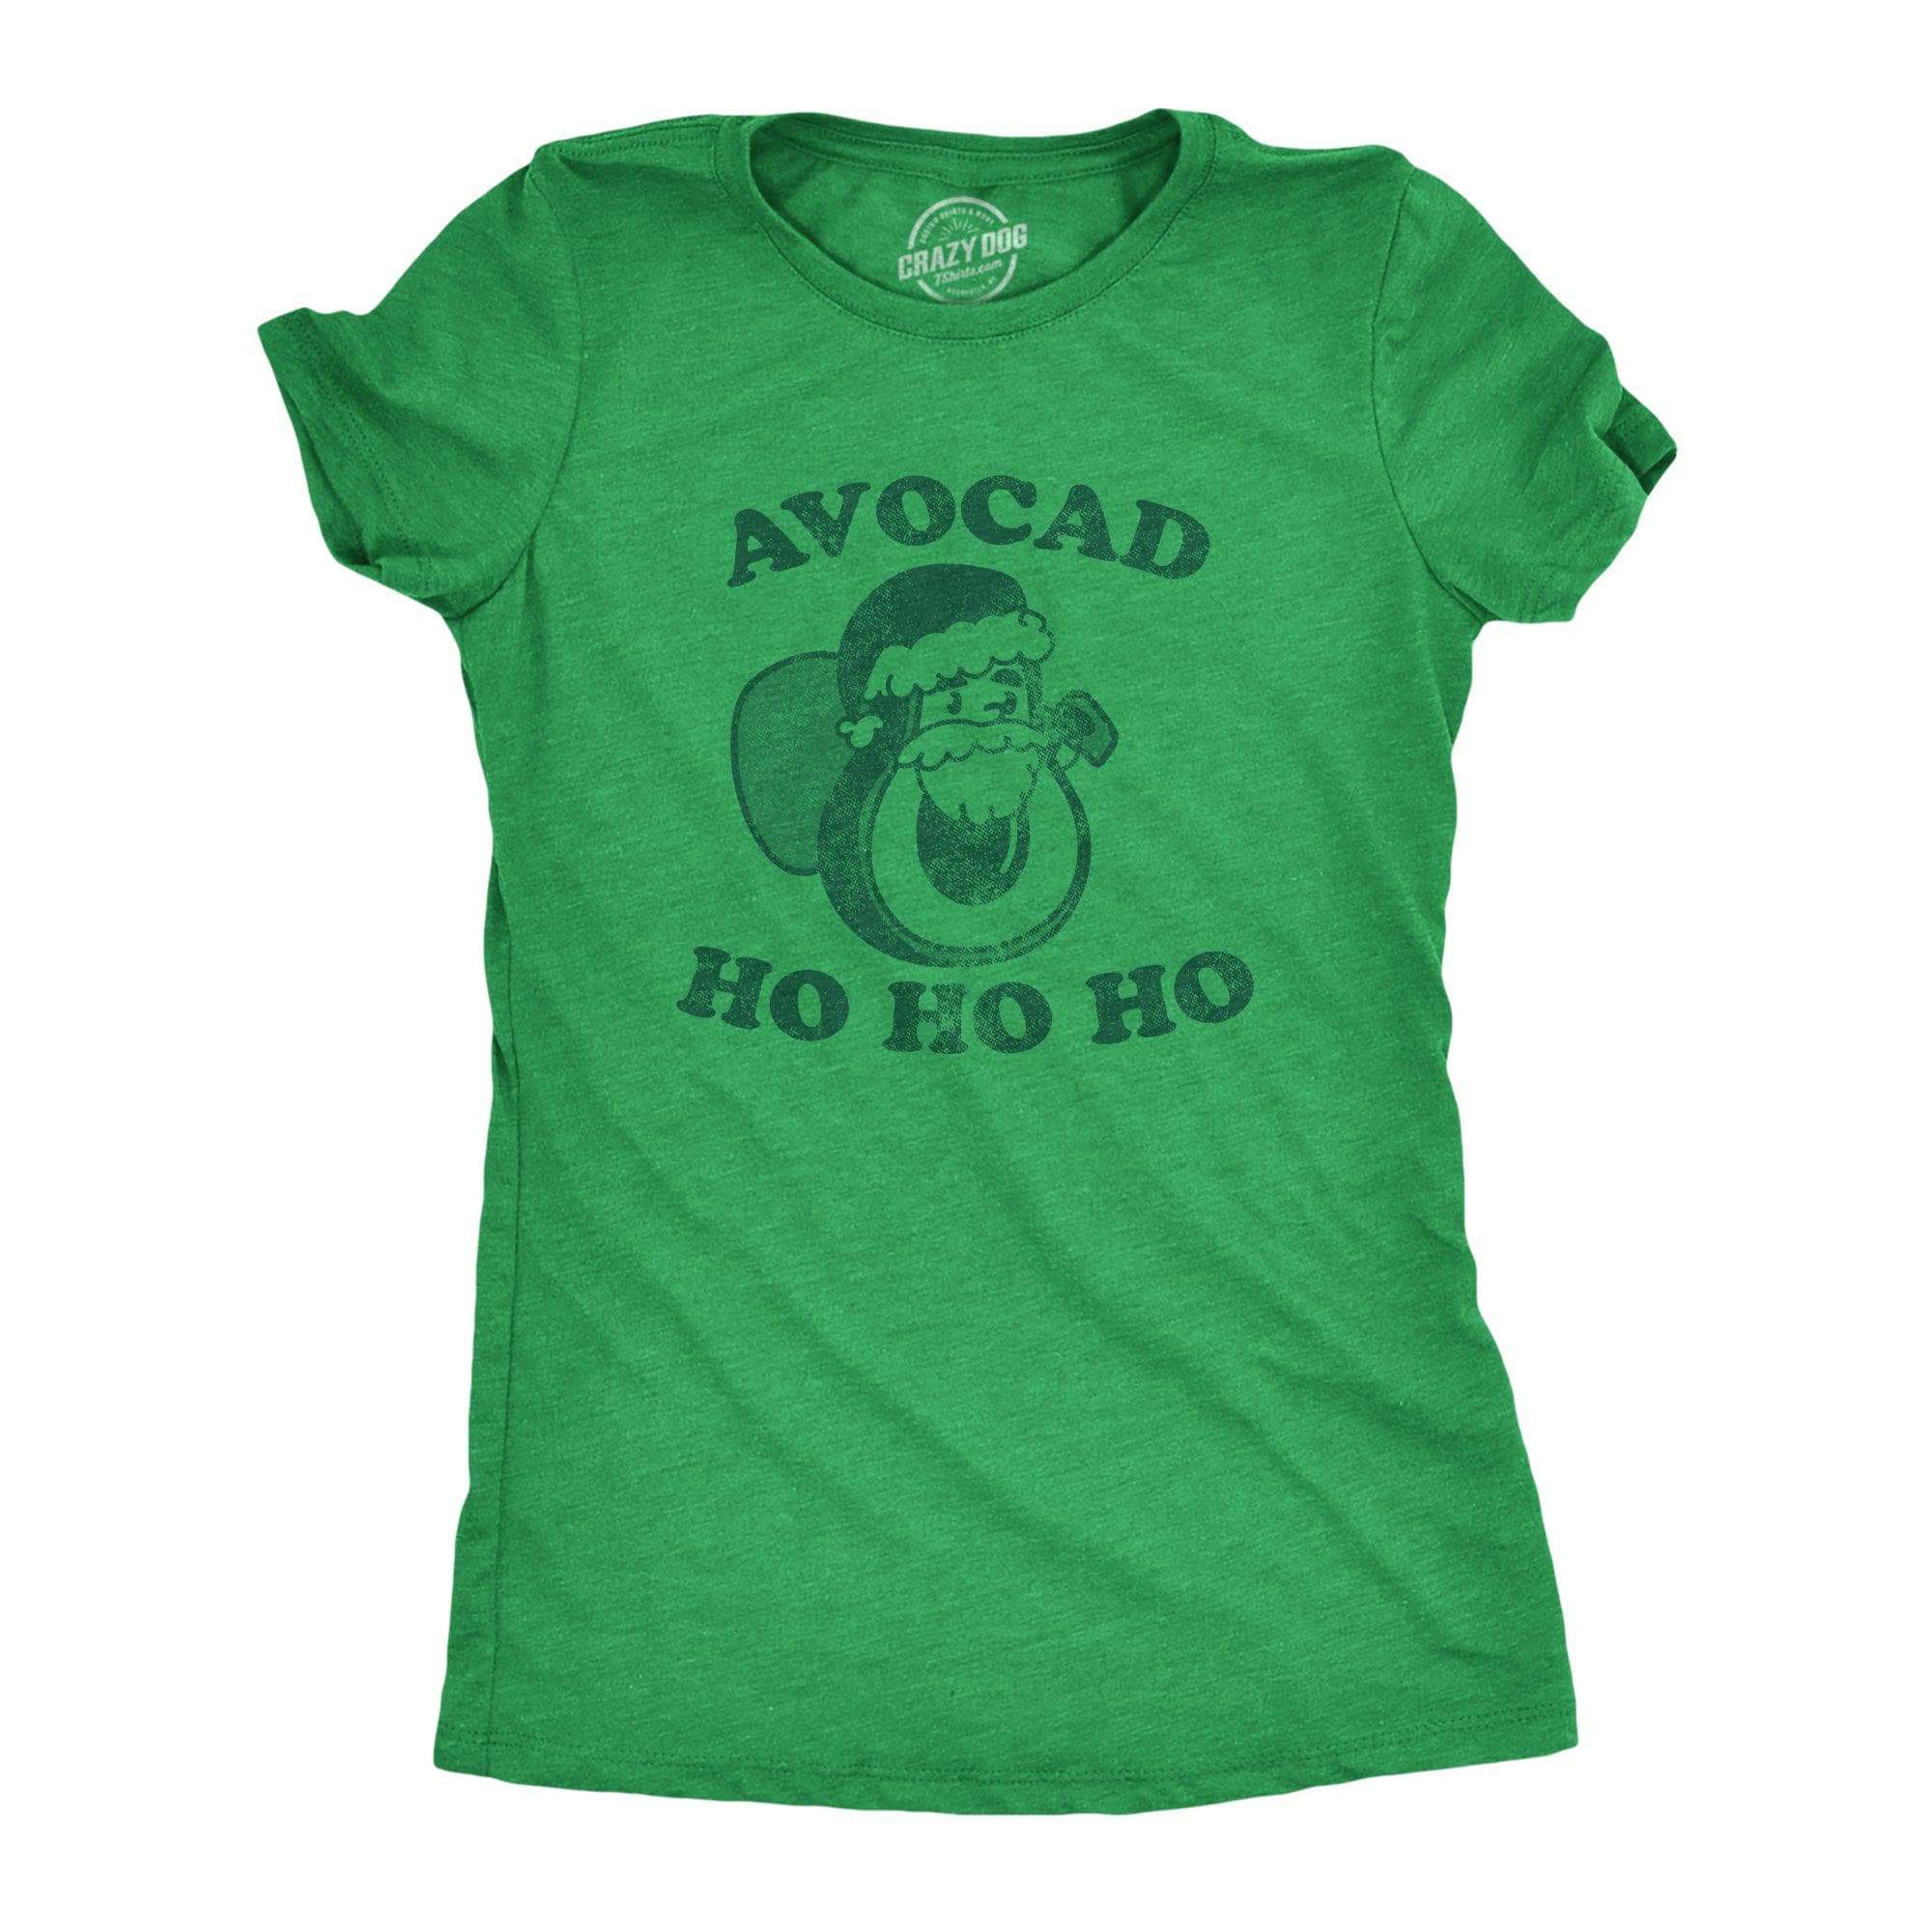 Avocad Ho Ho Ho Women's Tshirt  -  Crazy Dog T-Shirts